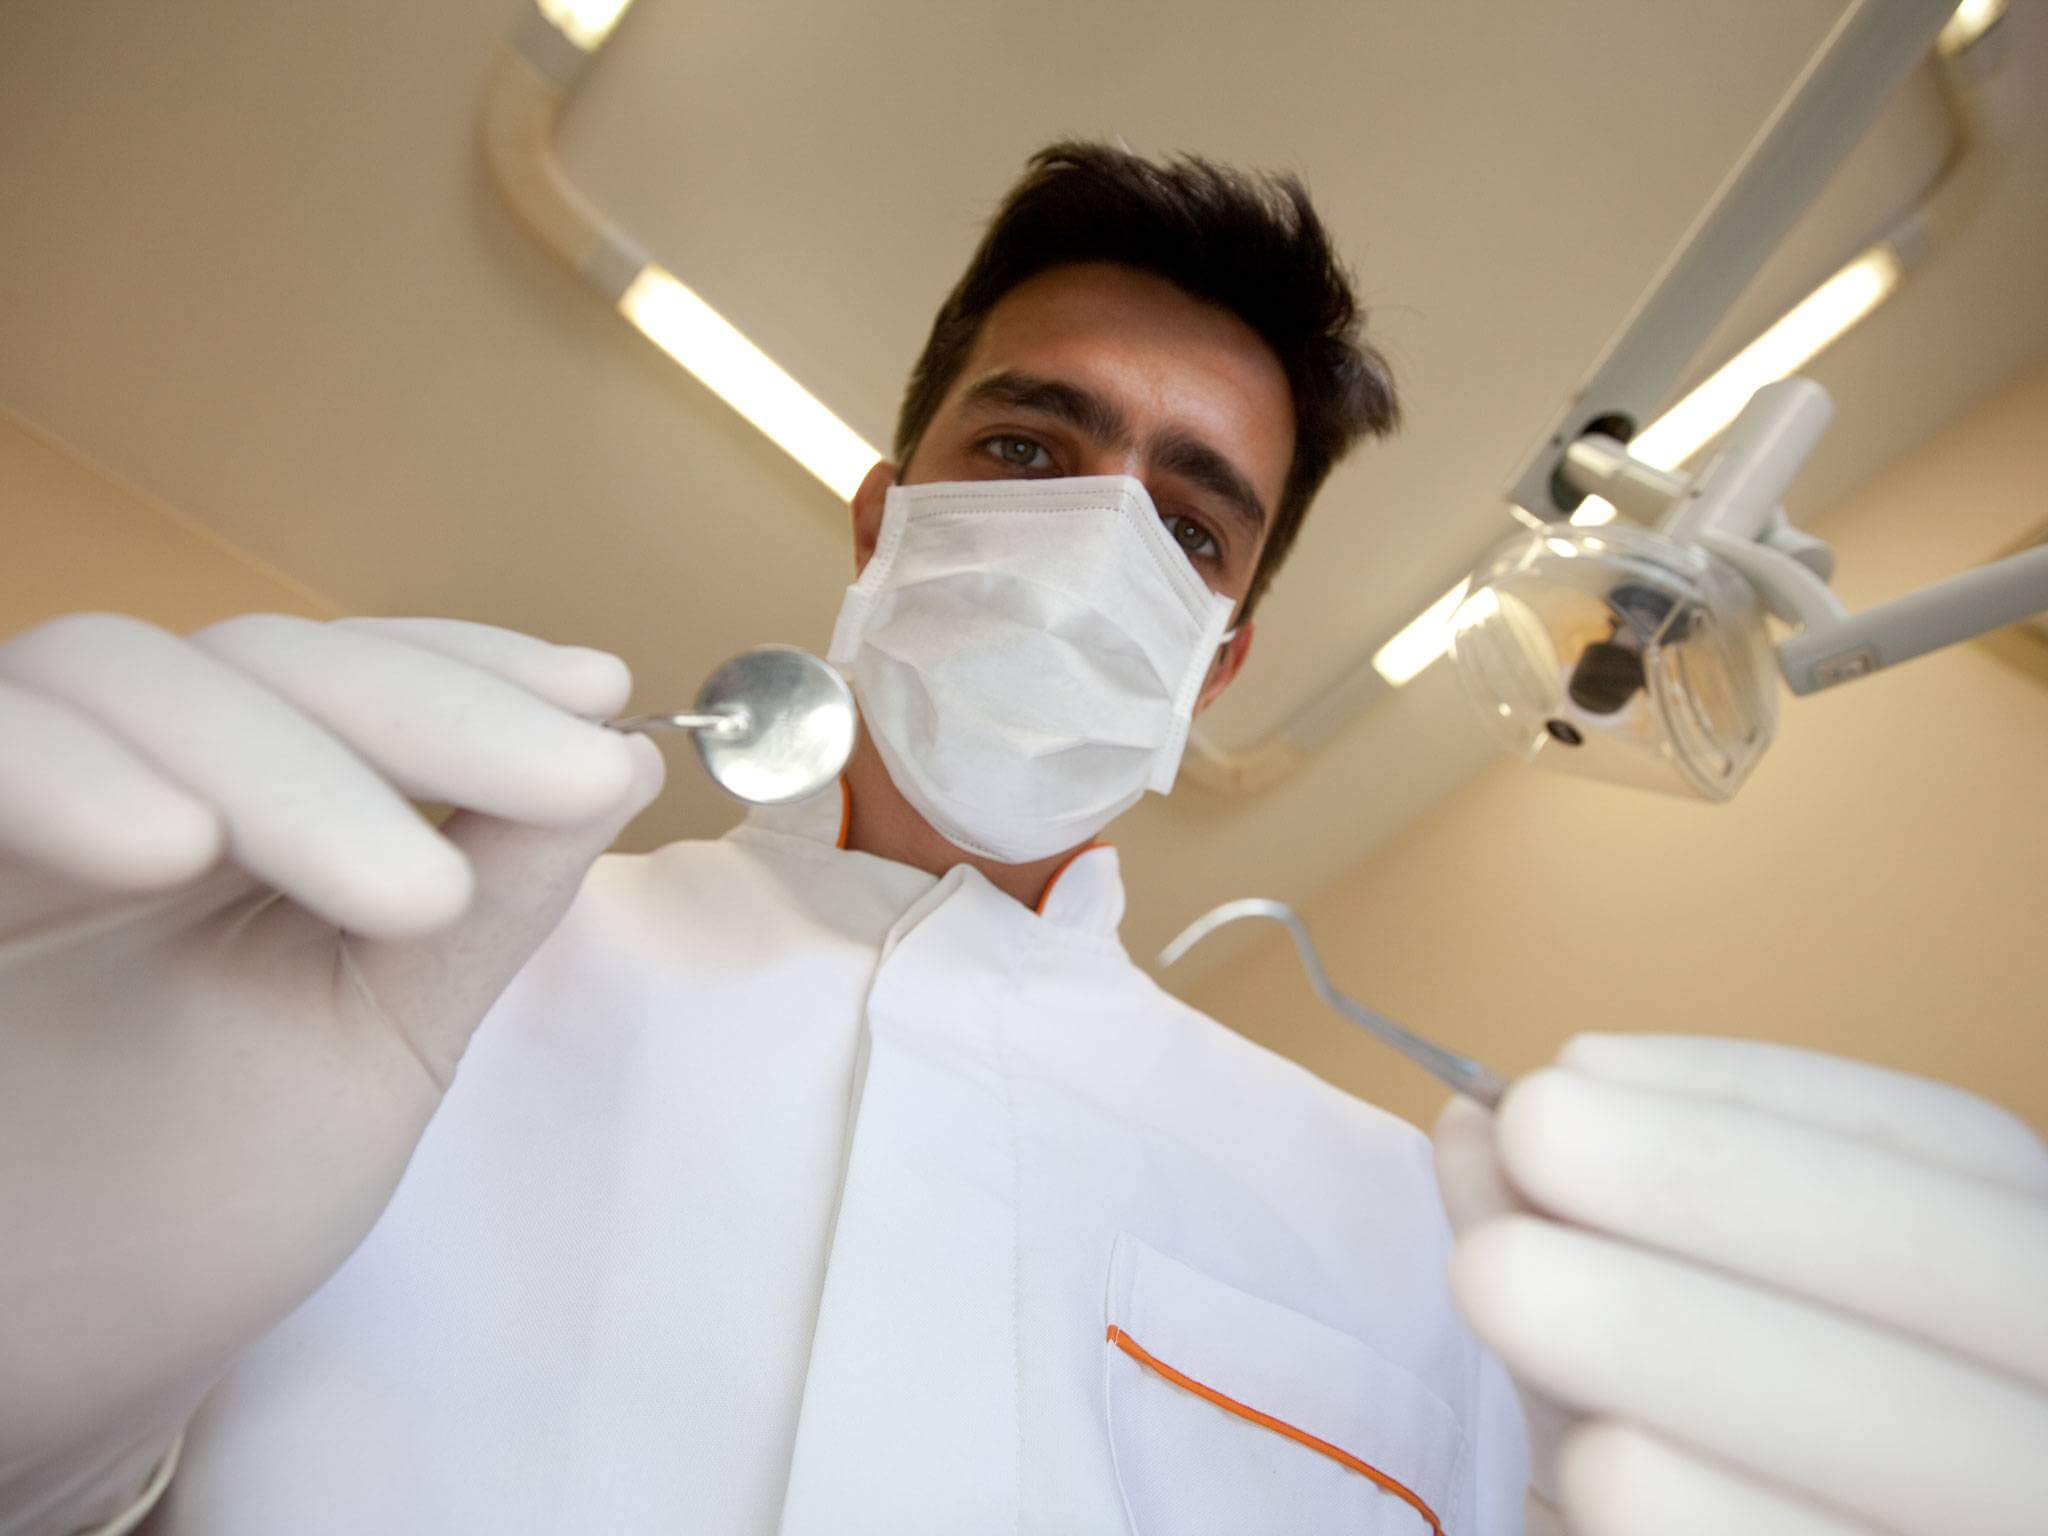 کلینیک دندانپزشکی دانا همه چیز در مورد عصب کشی بدون درد و درمان ریشه